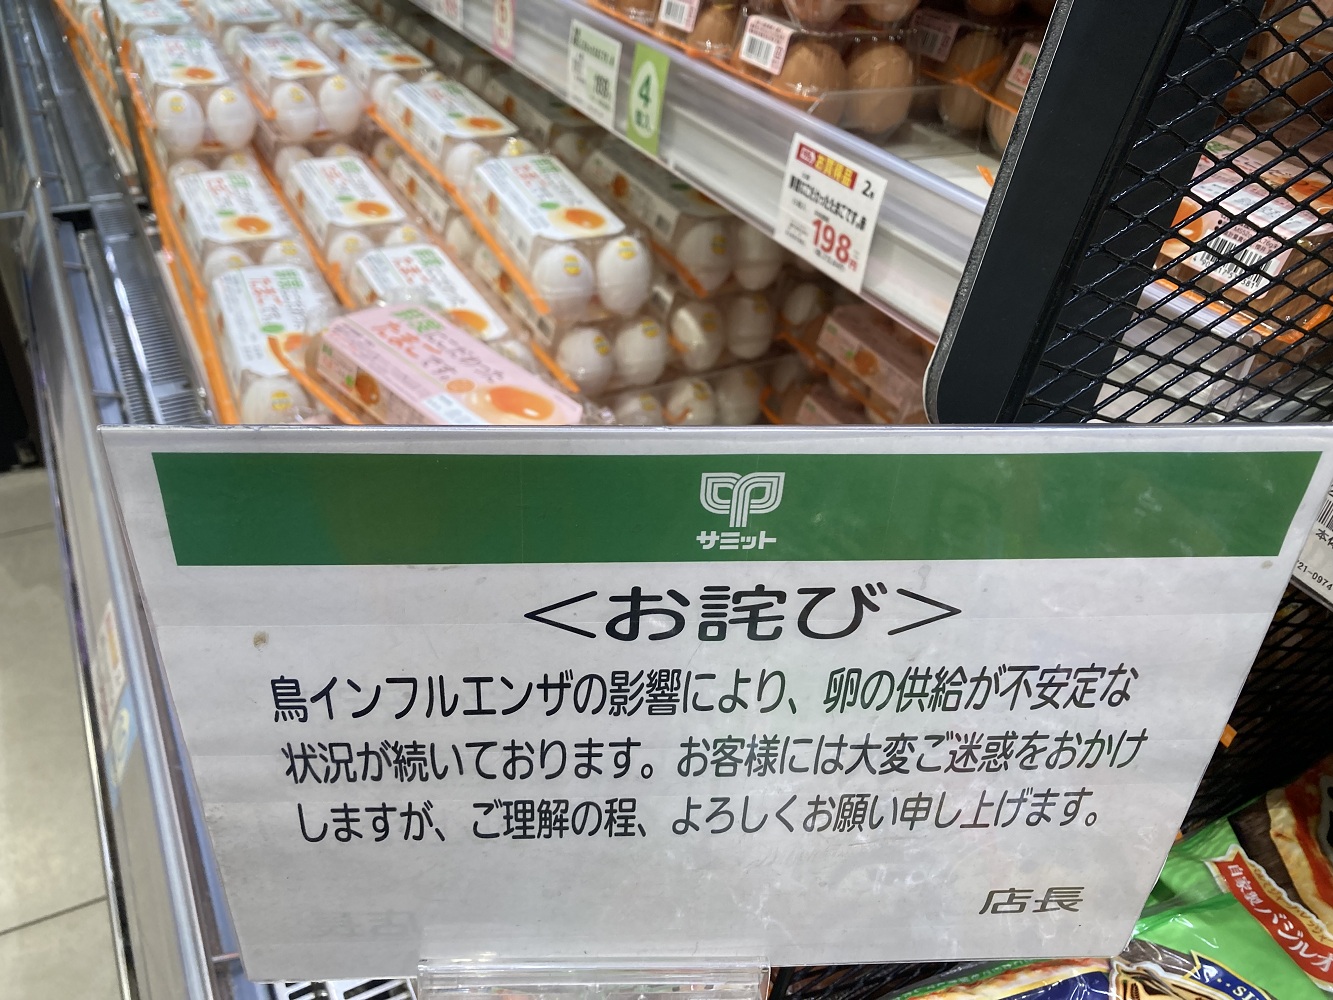 超市現在拚命維持10顆300日圓以下價格，但比去年夏天貴了100日圓左右，不時缺貨，還貼出為了供應不安定的道歉聲明。 圖：劉黎兒攝